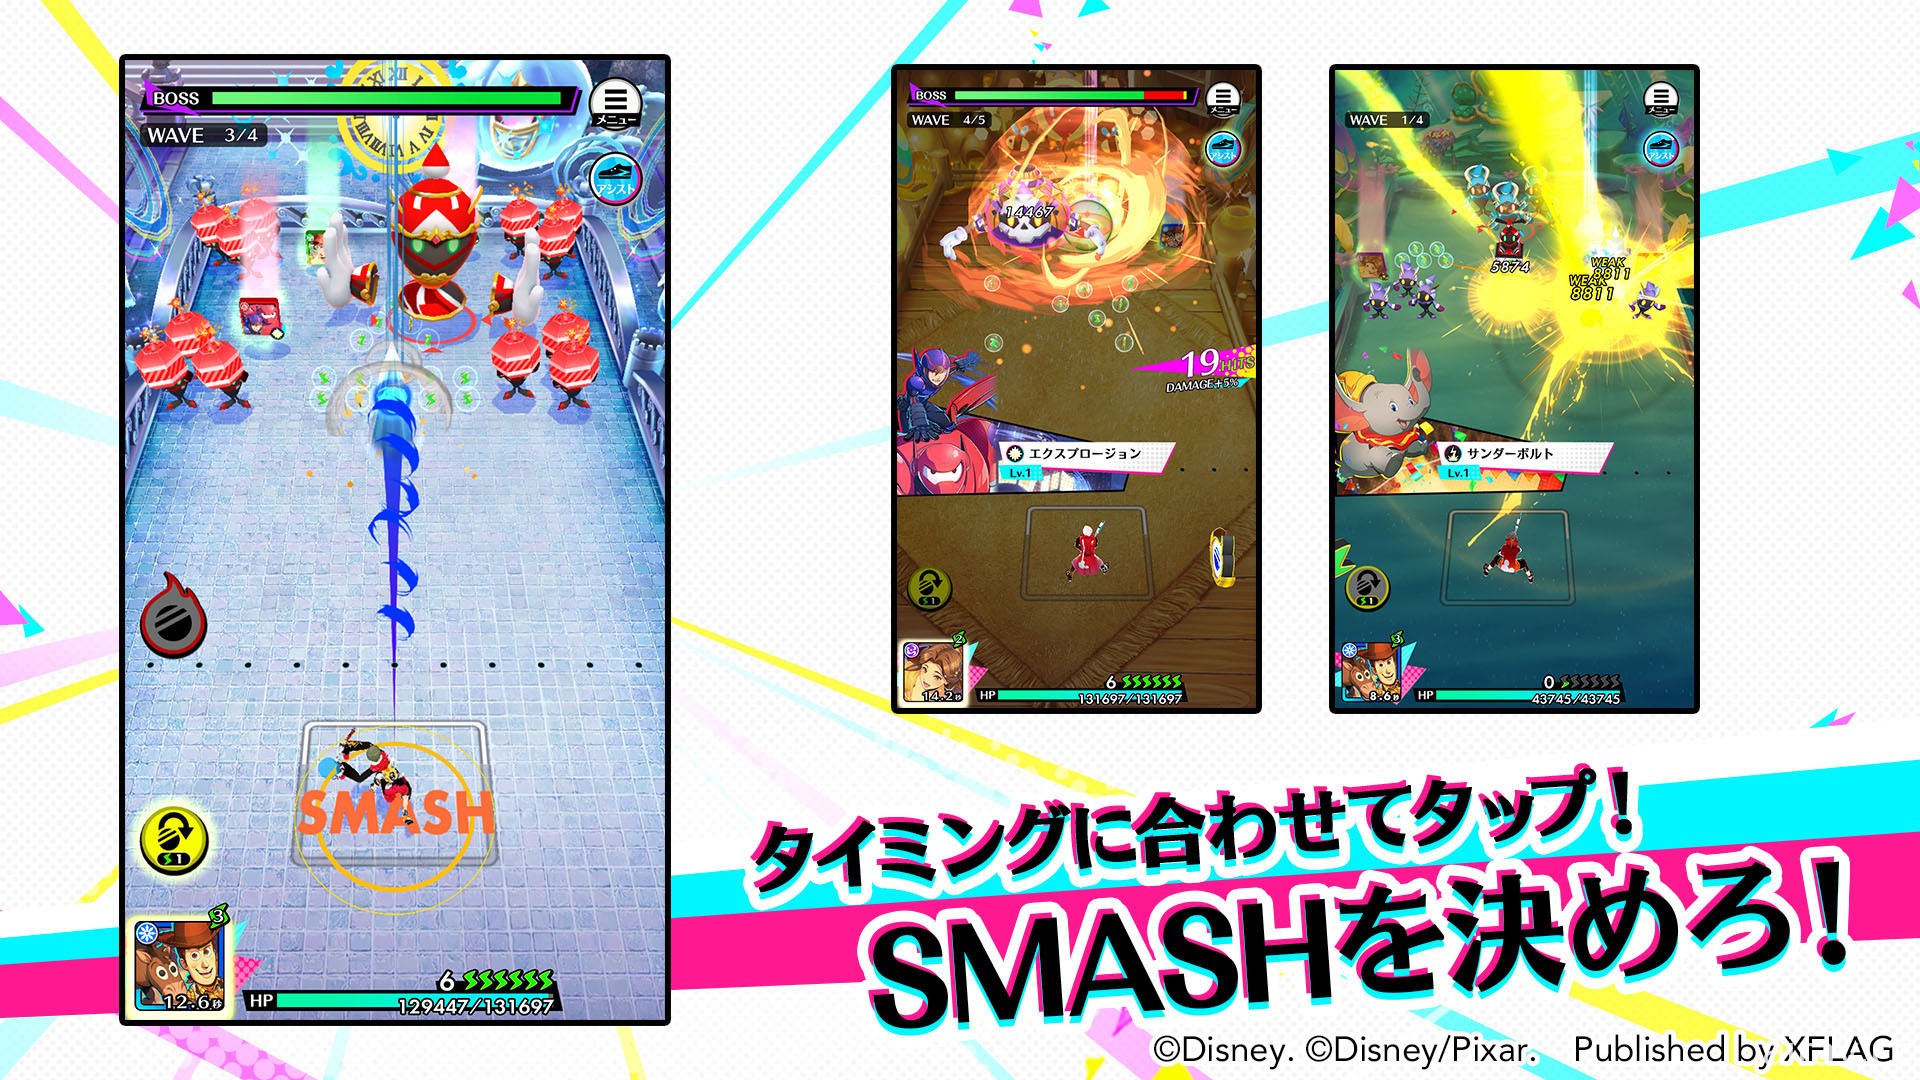 《怪物弹珠》mixi x 日本迪士尼手机新作《STAR SMASH》详情公开 预计 11 月 16 日推出